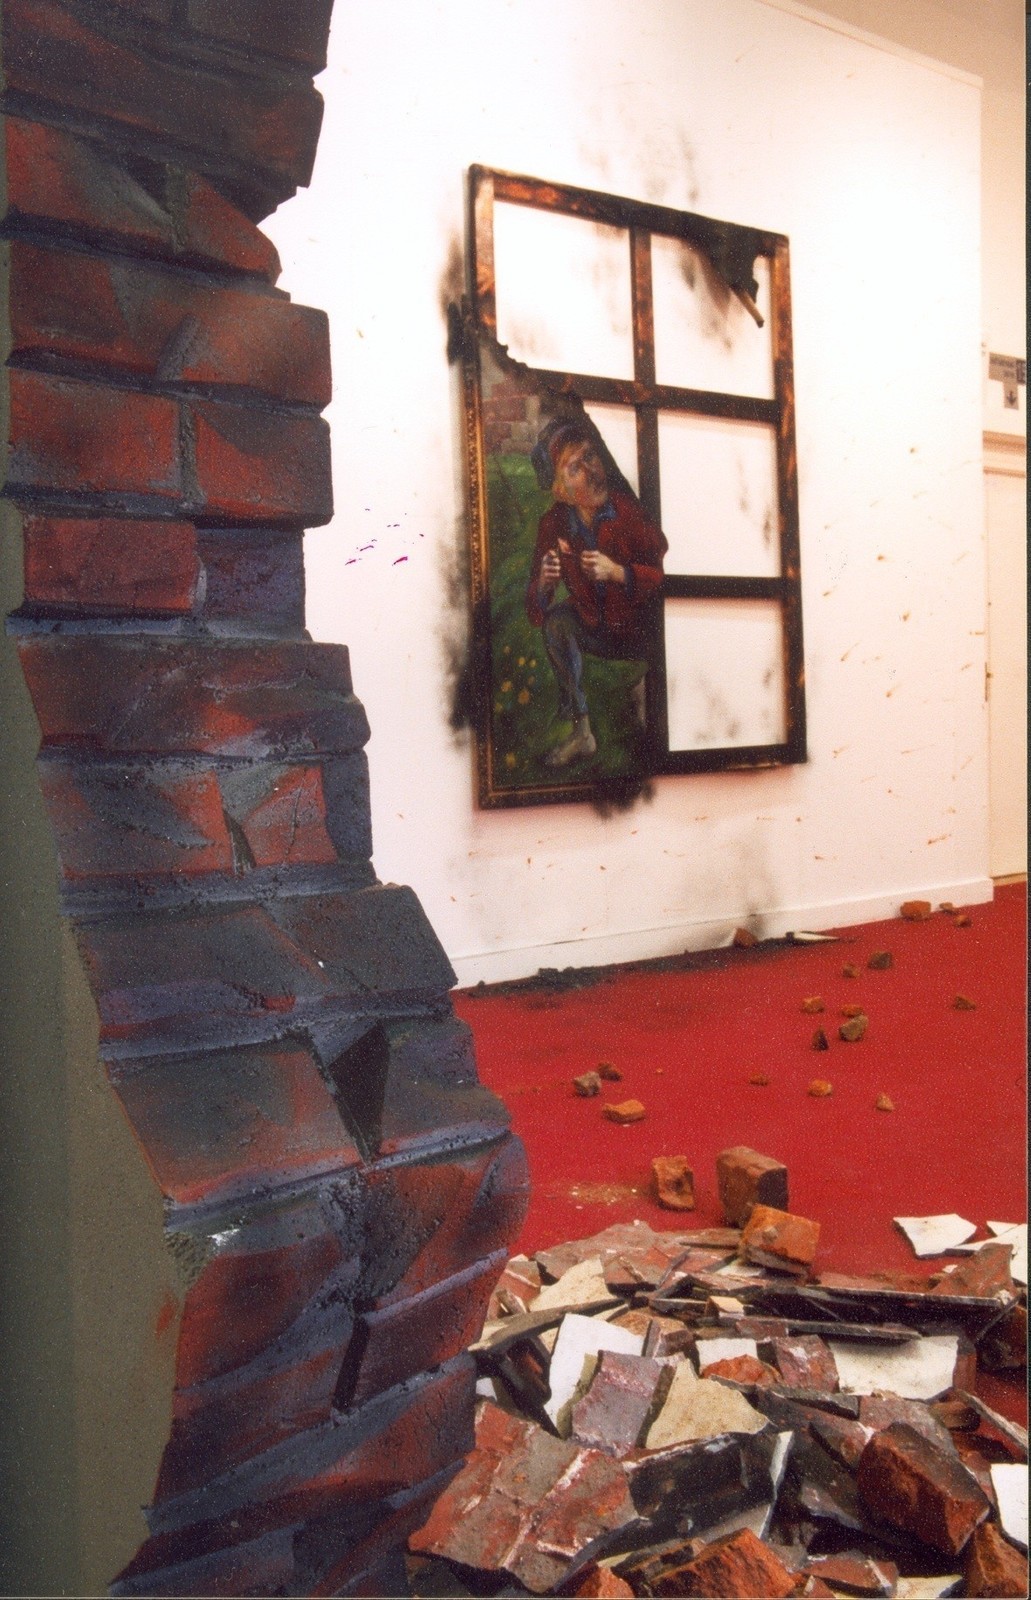 Художник, погибший под картиной в результате взрыва накануне вернисажа. 2004  Предоставлено авторами